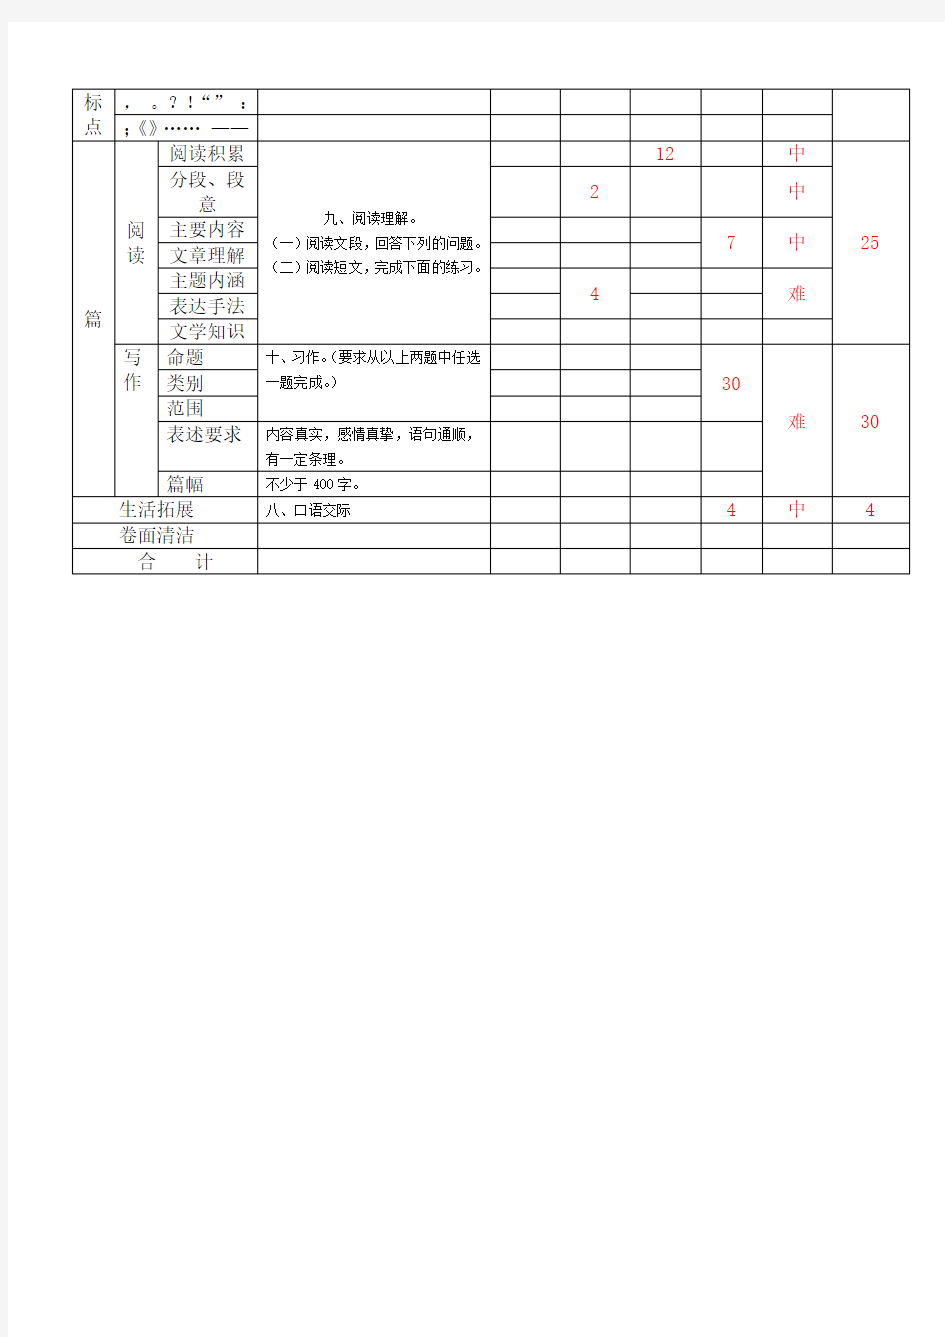 (完整版)小学语文期末考试命题双向细目表(1)